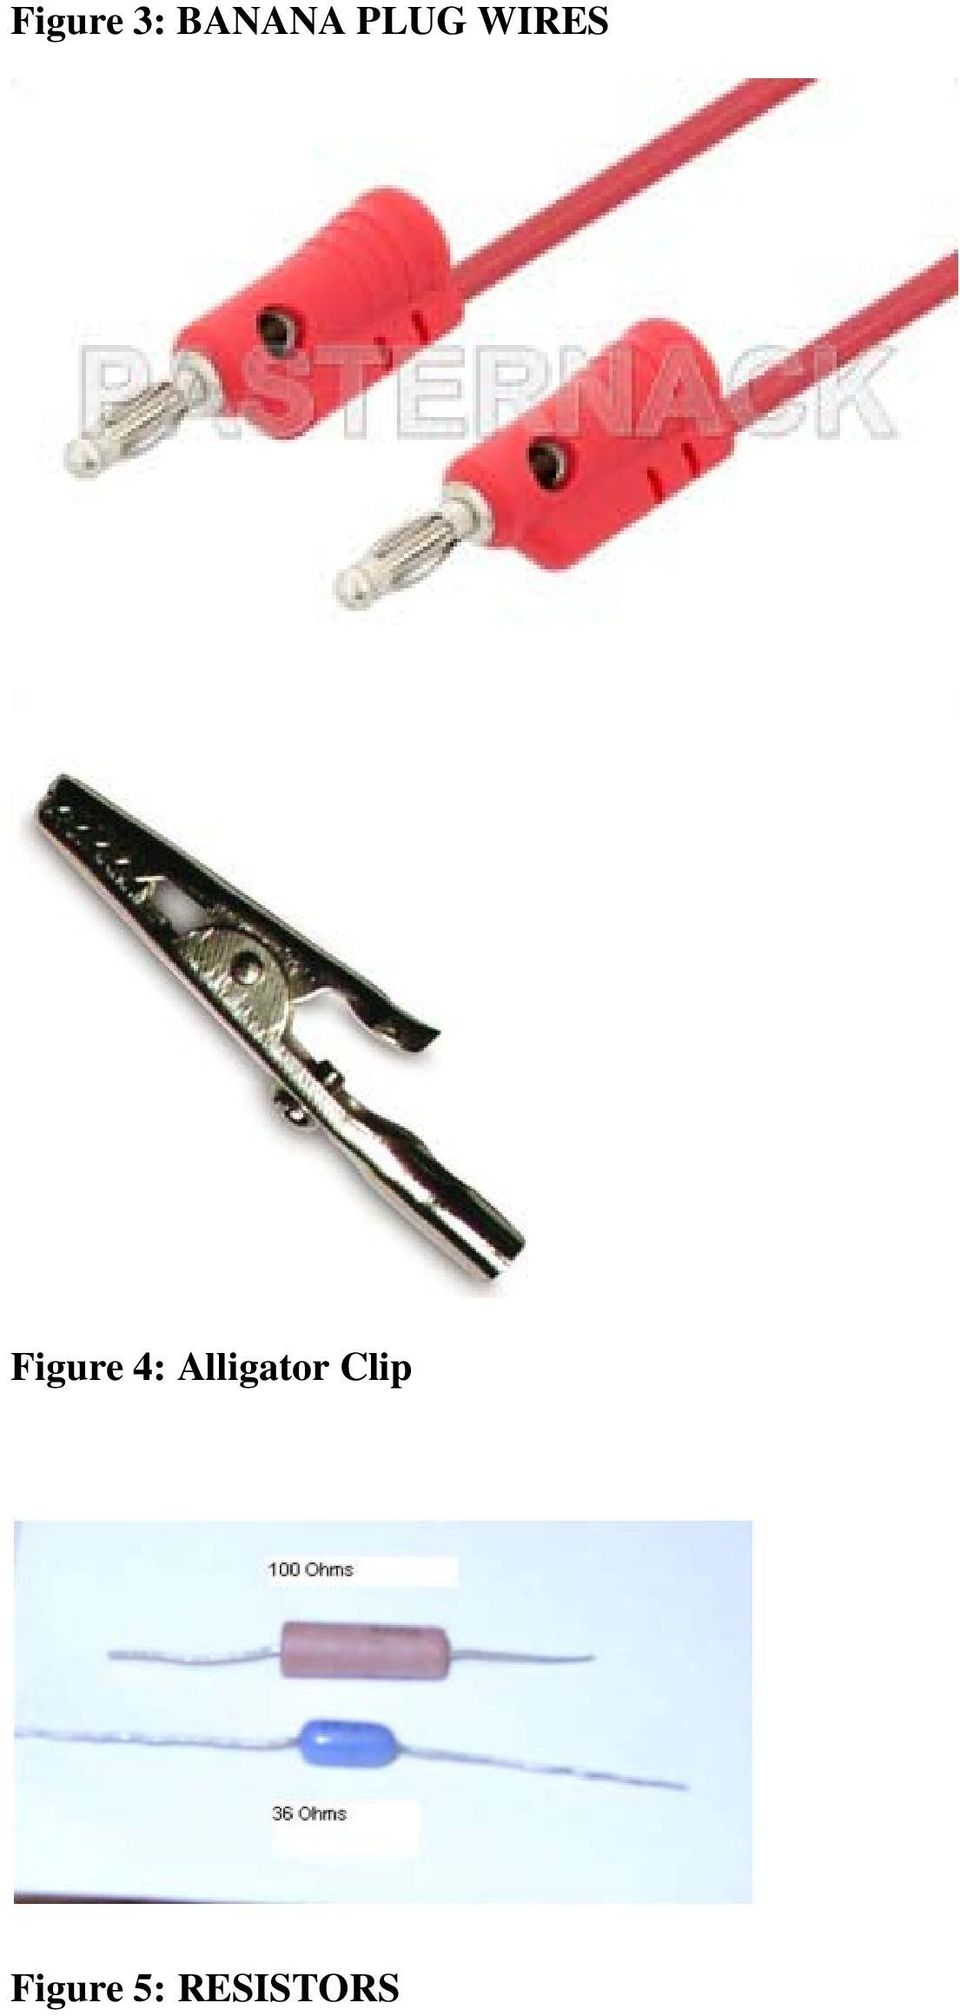 4: Alligator Clip